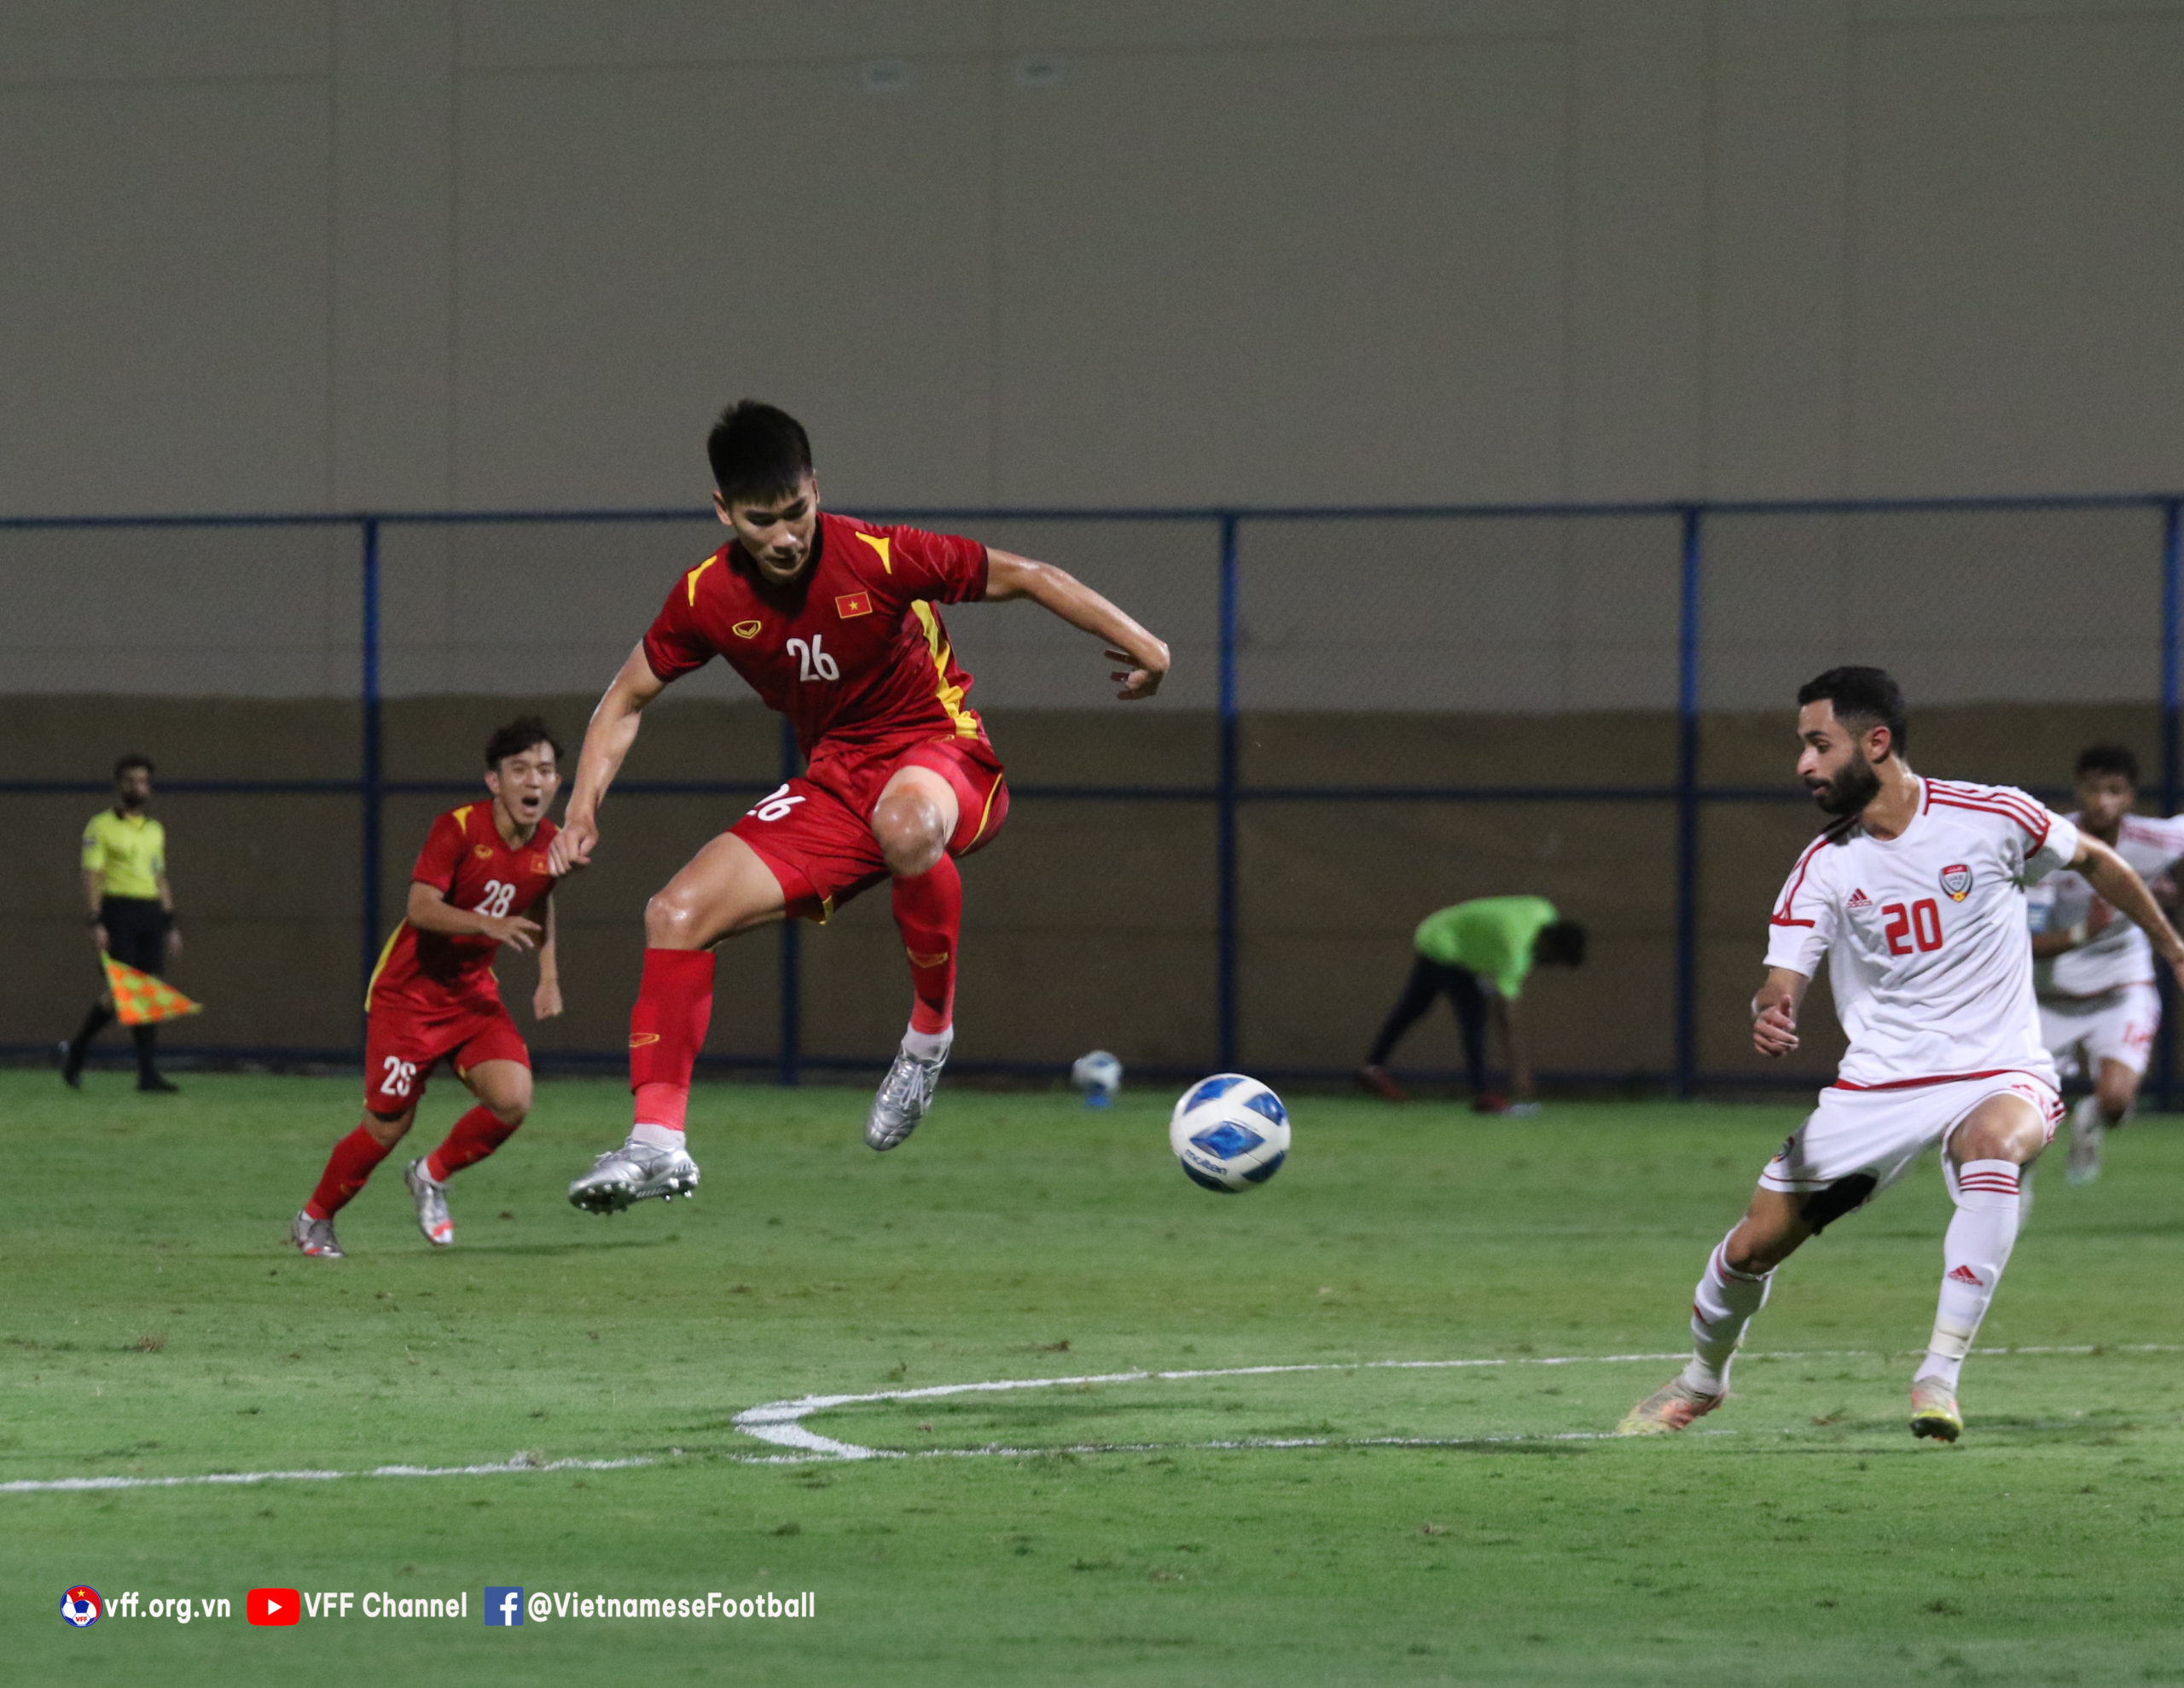 Nhâm Mạnh Dũng (số 26) không ghi bàn trong trận thua của U23 Việt Nam trước UAE (ảnh: VFF).